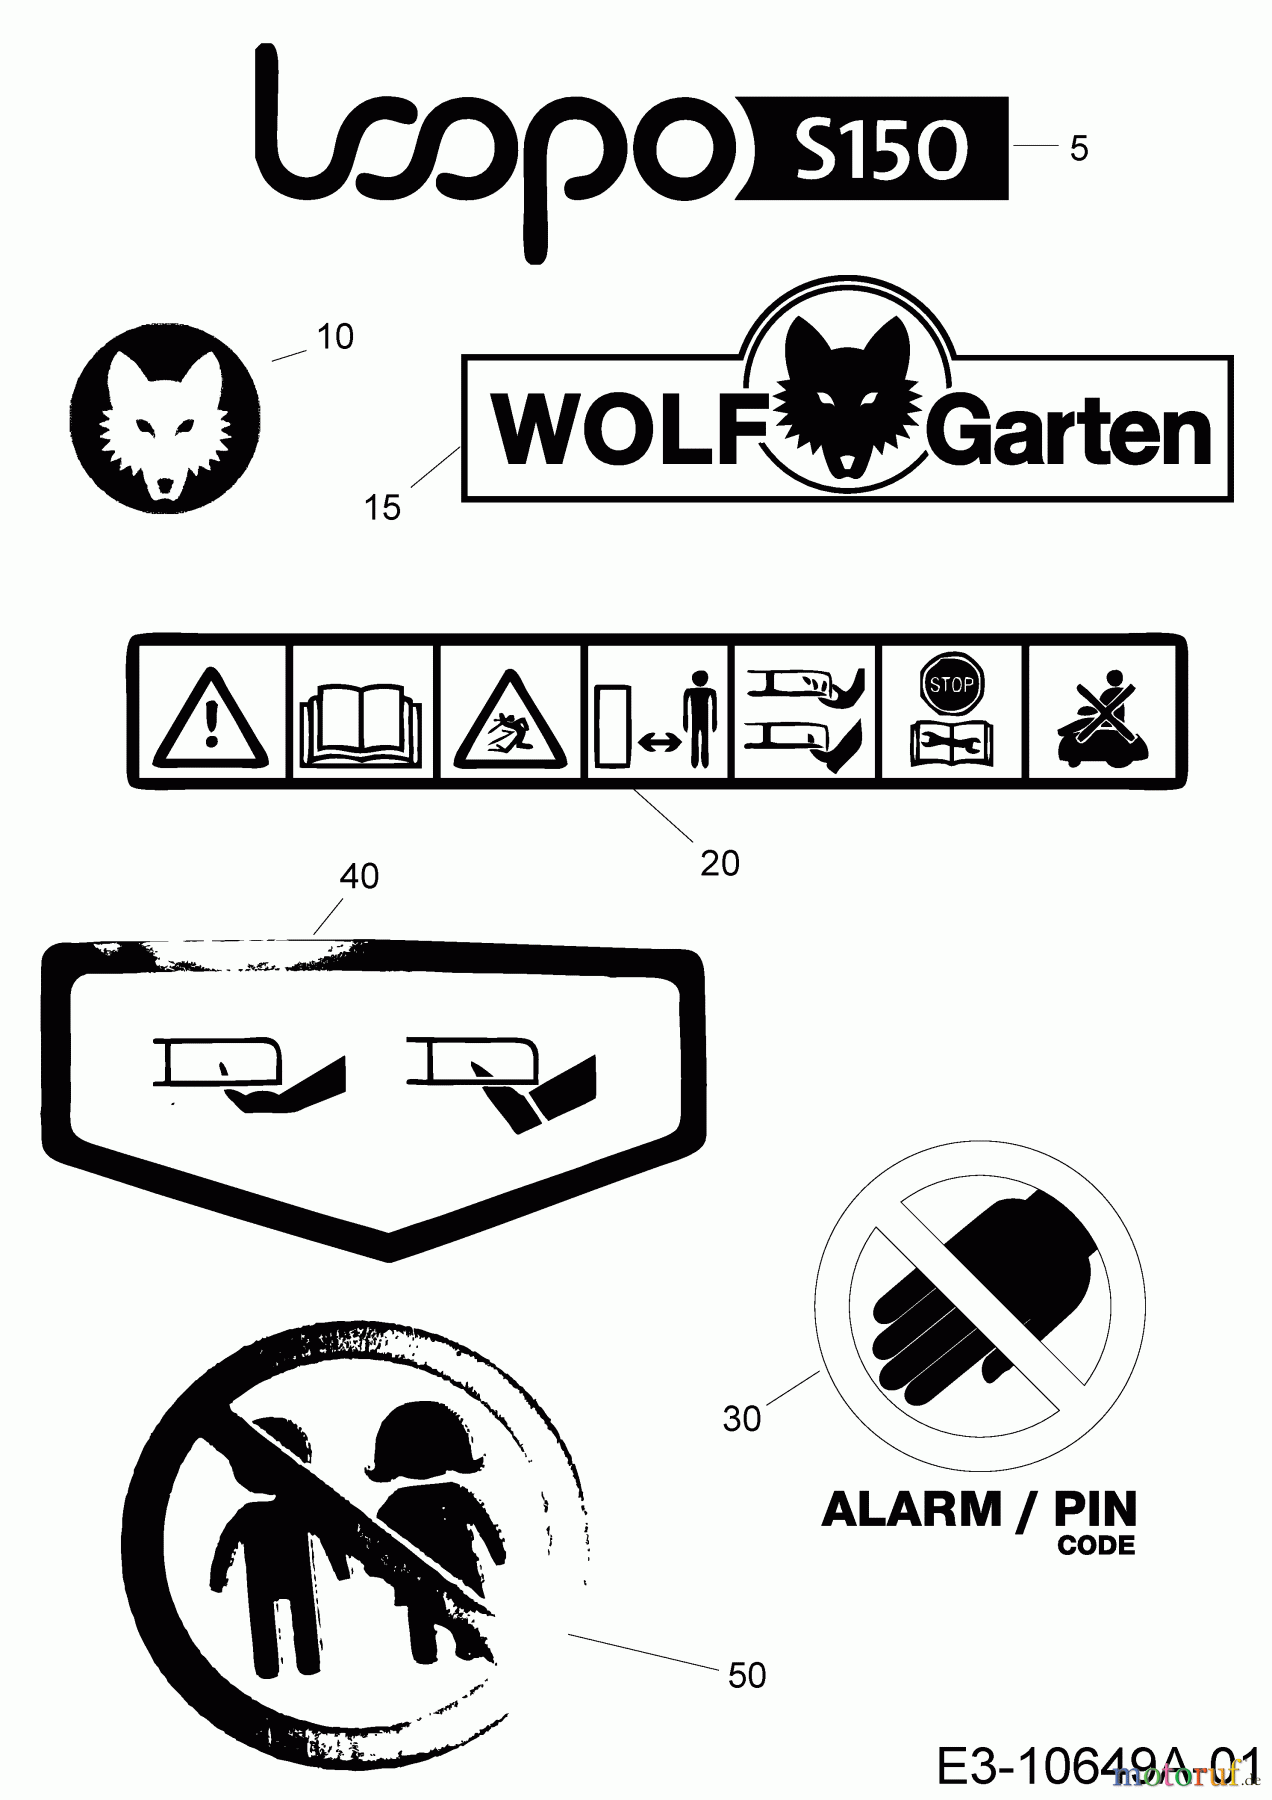  Wolf-Garten Robotic lawn mower Loopo S150 22AXBACA650  (2018) Labels